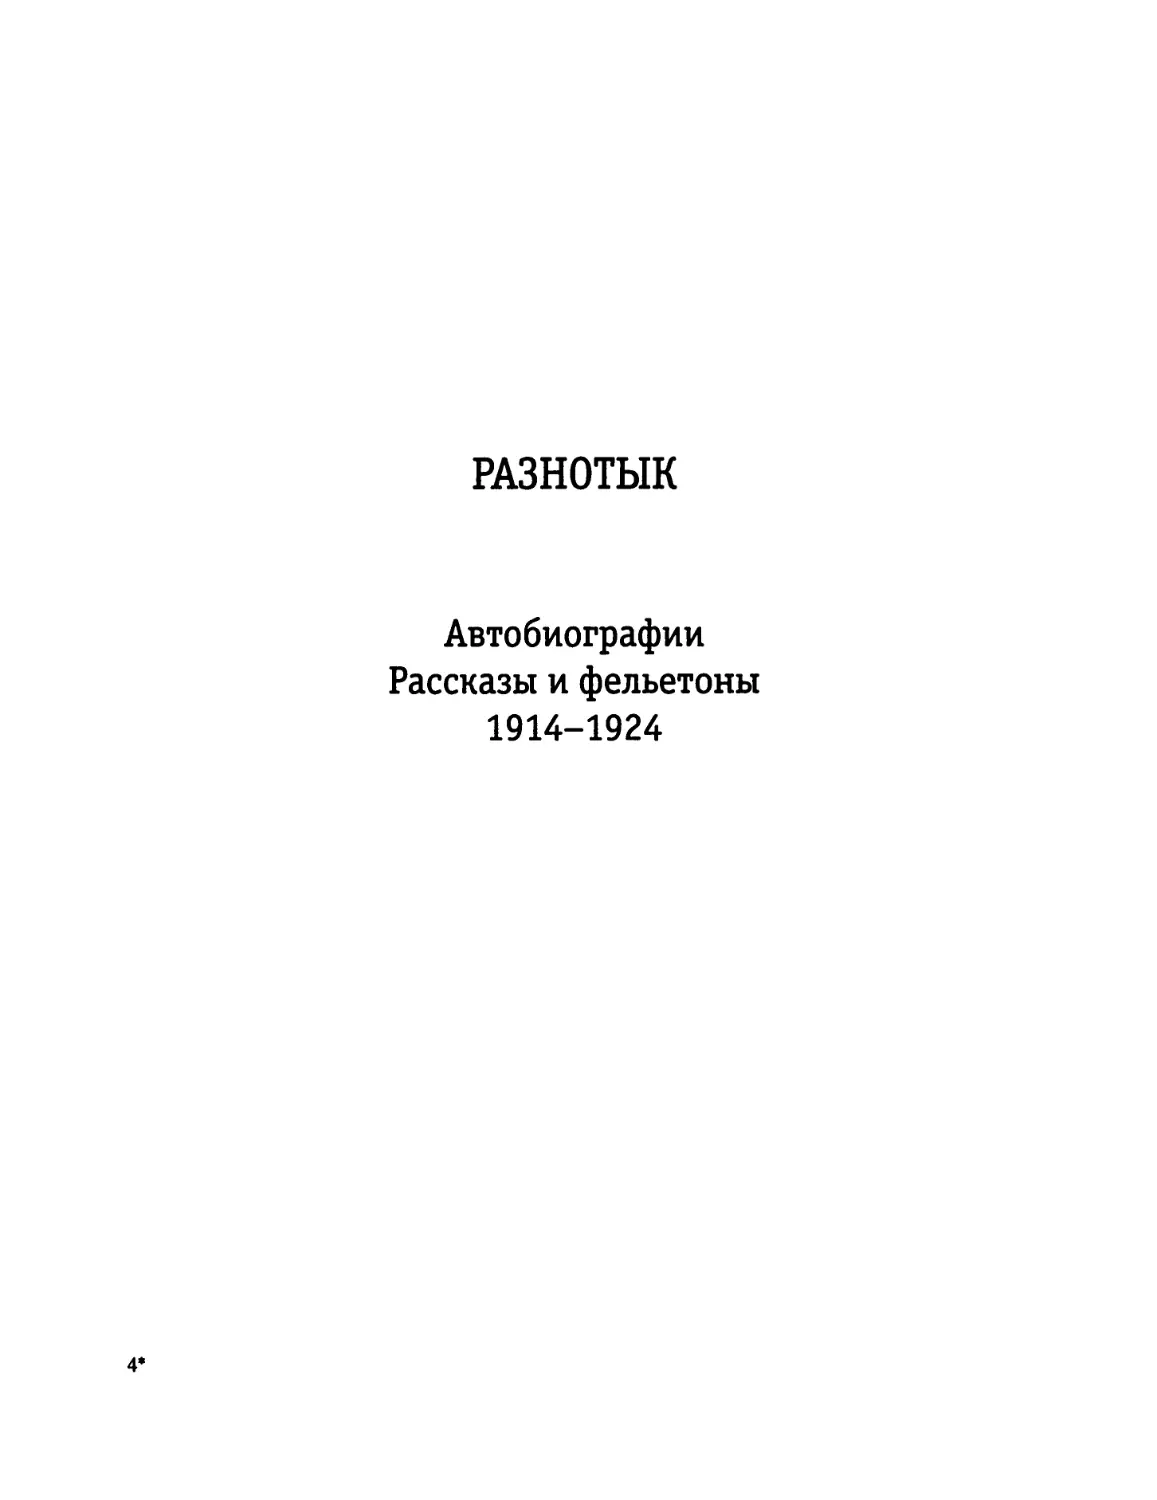 РАЗНОТЫК. Автобиографии. Рассказы и фельетоны 1914-1924